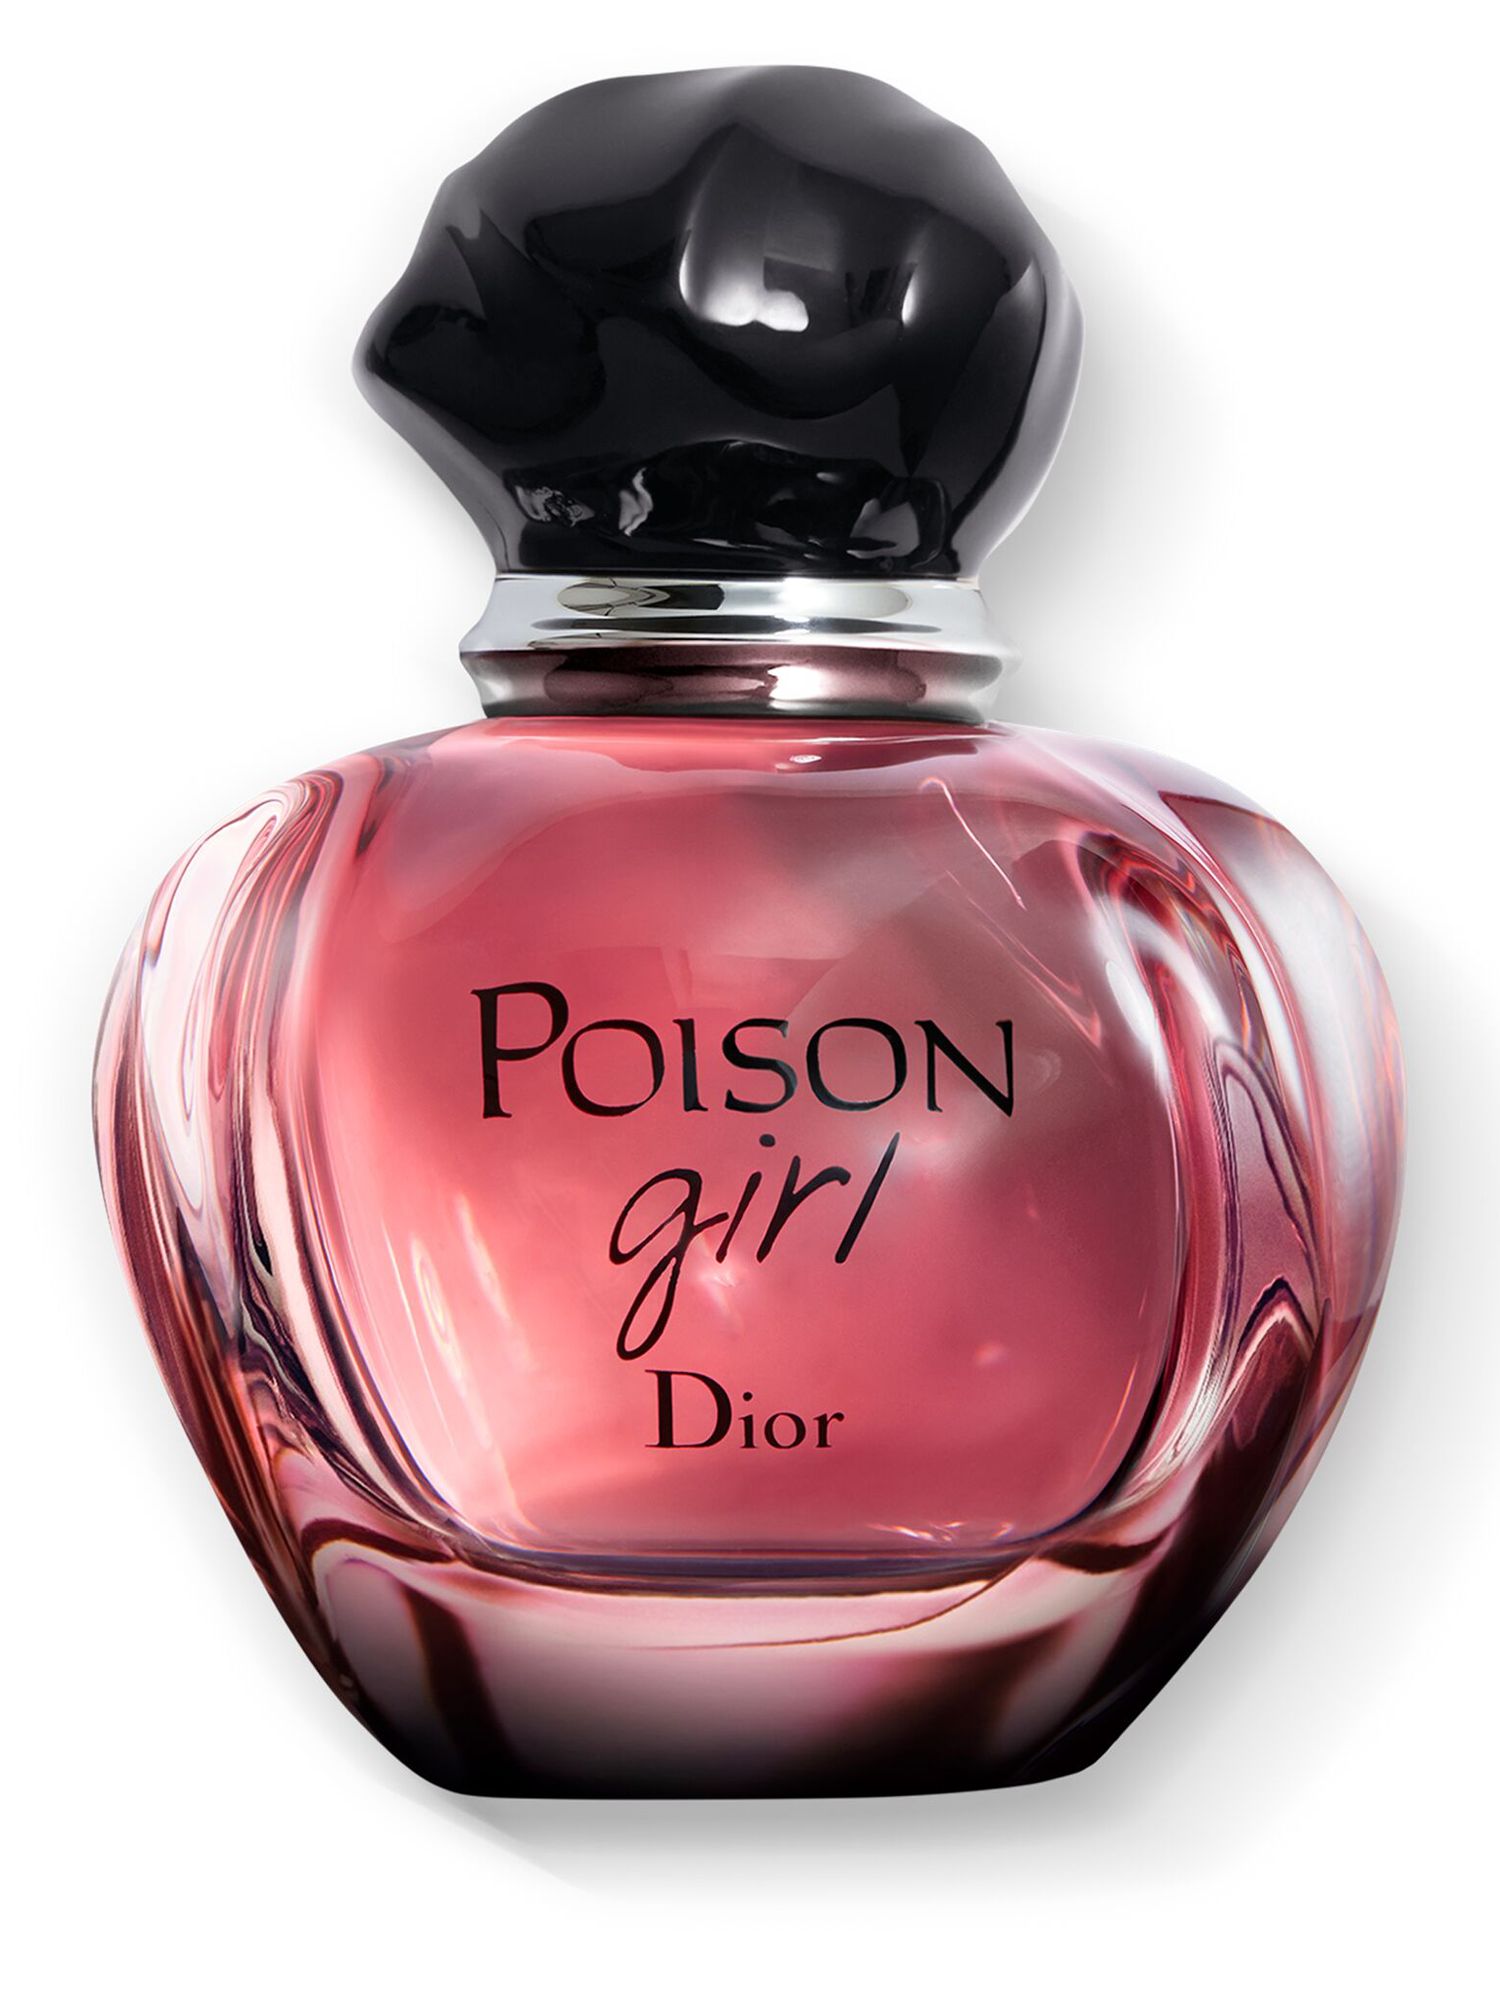 poison girl fragrance